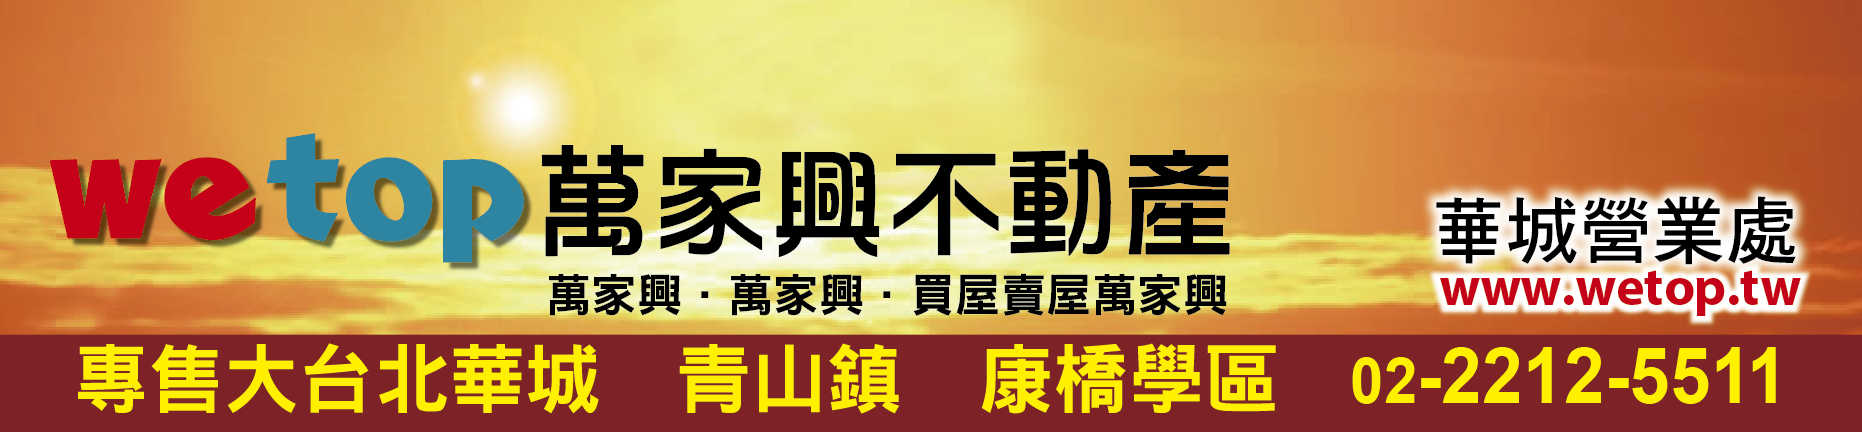 關於我們-萬家興不動產-青山鎮大台北華城康橋學區別墅豪宅專賣 Logo